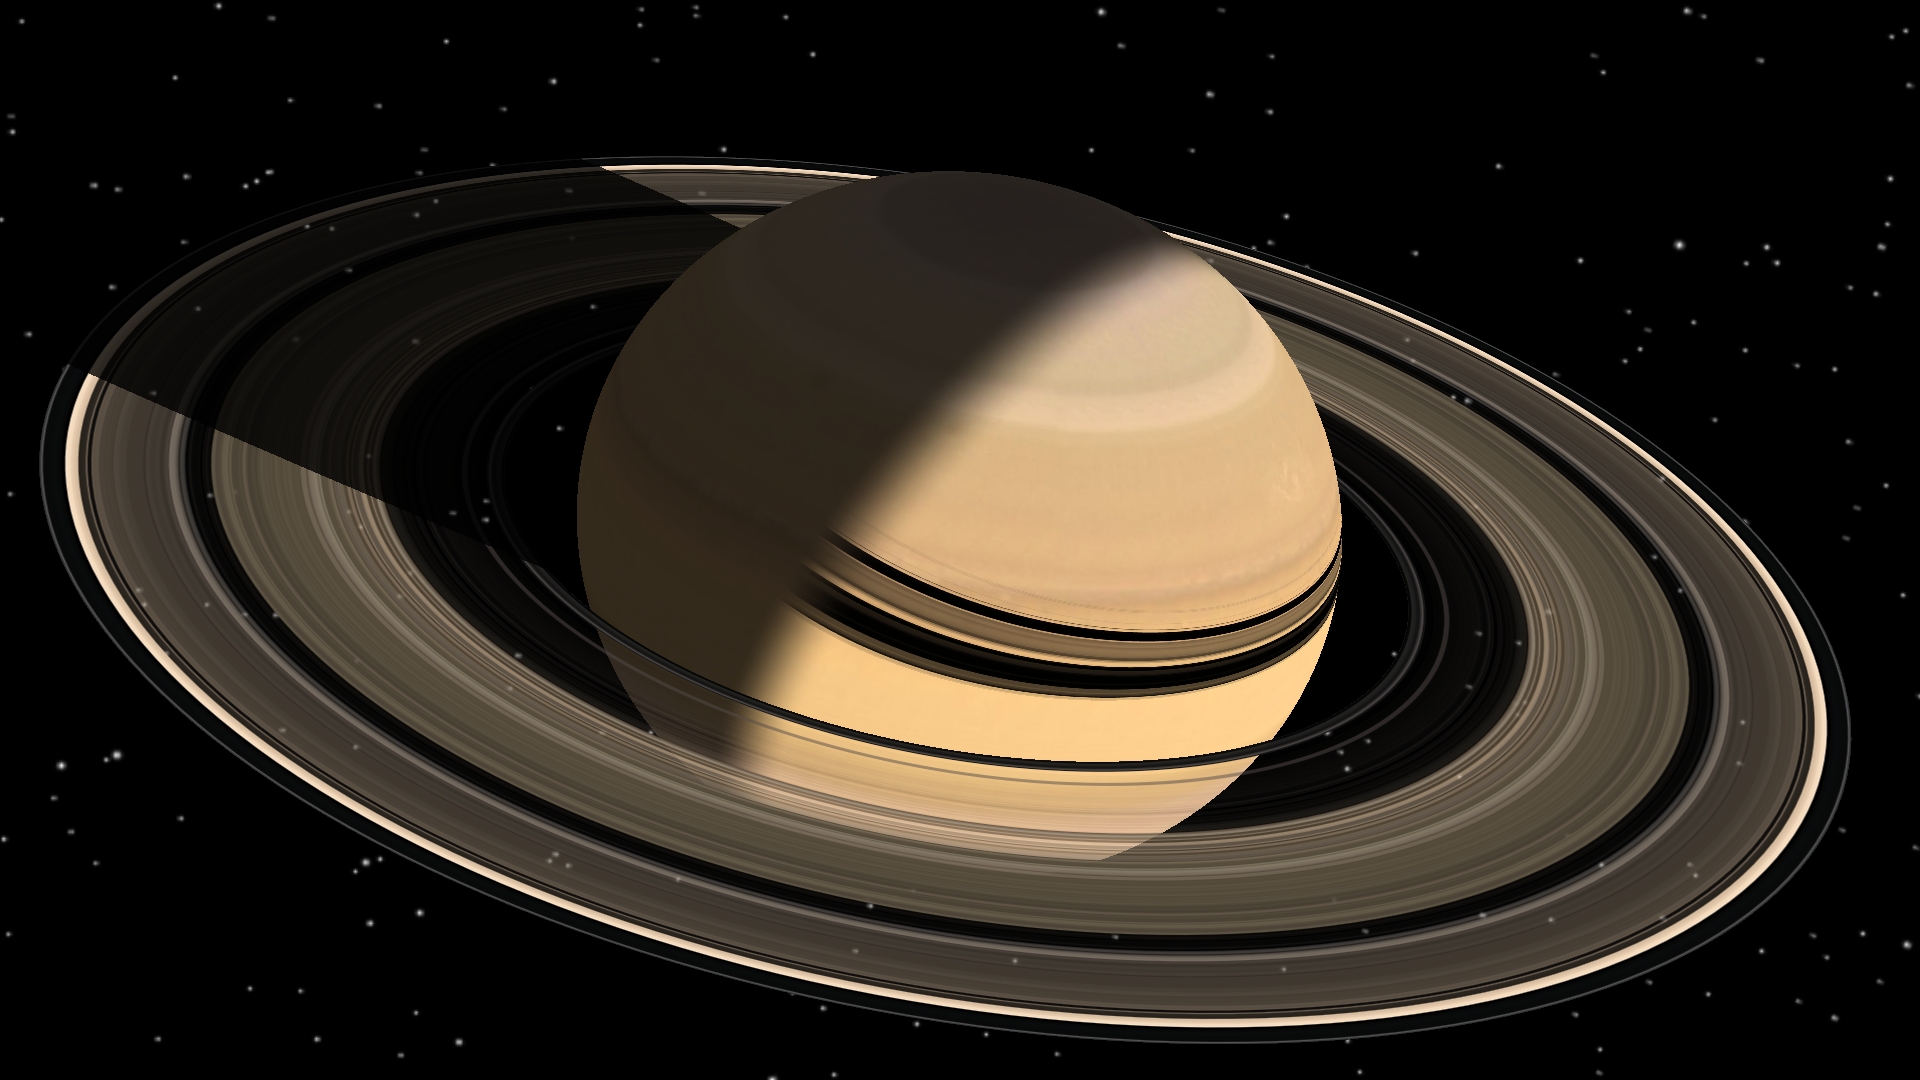 В атмосфере Сатурна присутствуют таинственные частицы неизвестного происхождения